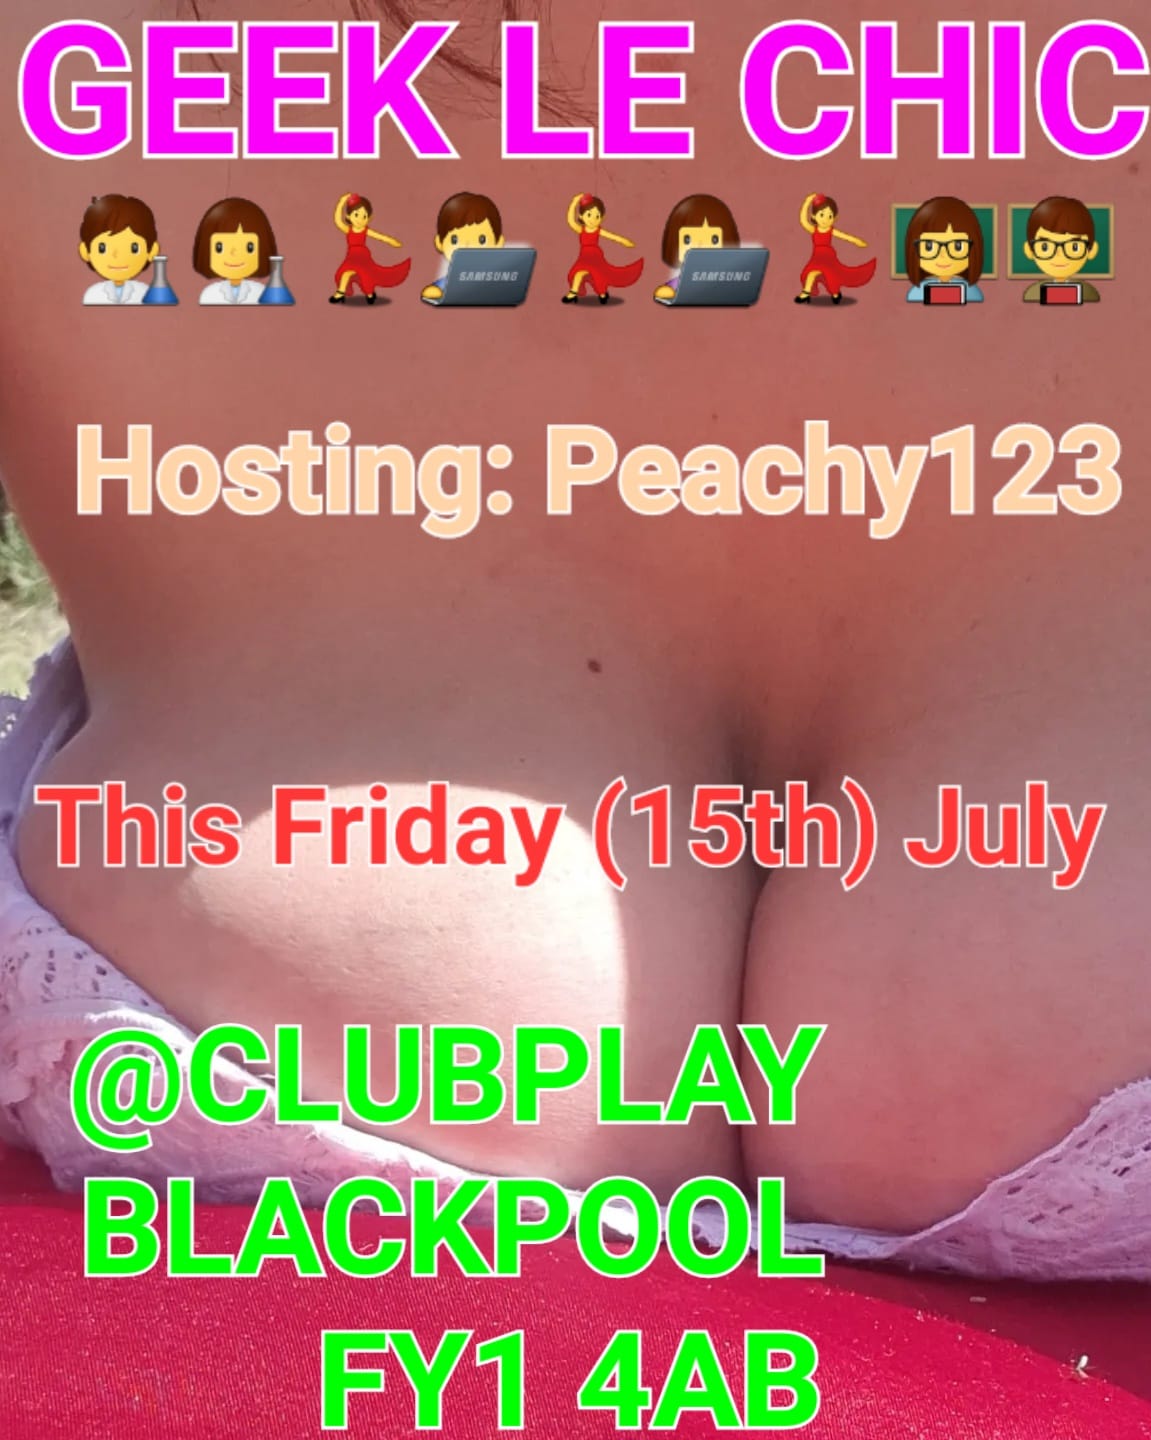 Fantasy Island - GEEK LE CHIC- Friday 15th July - Club Play - 8pm till 3am